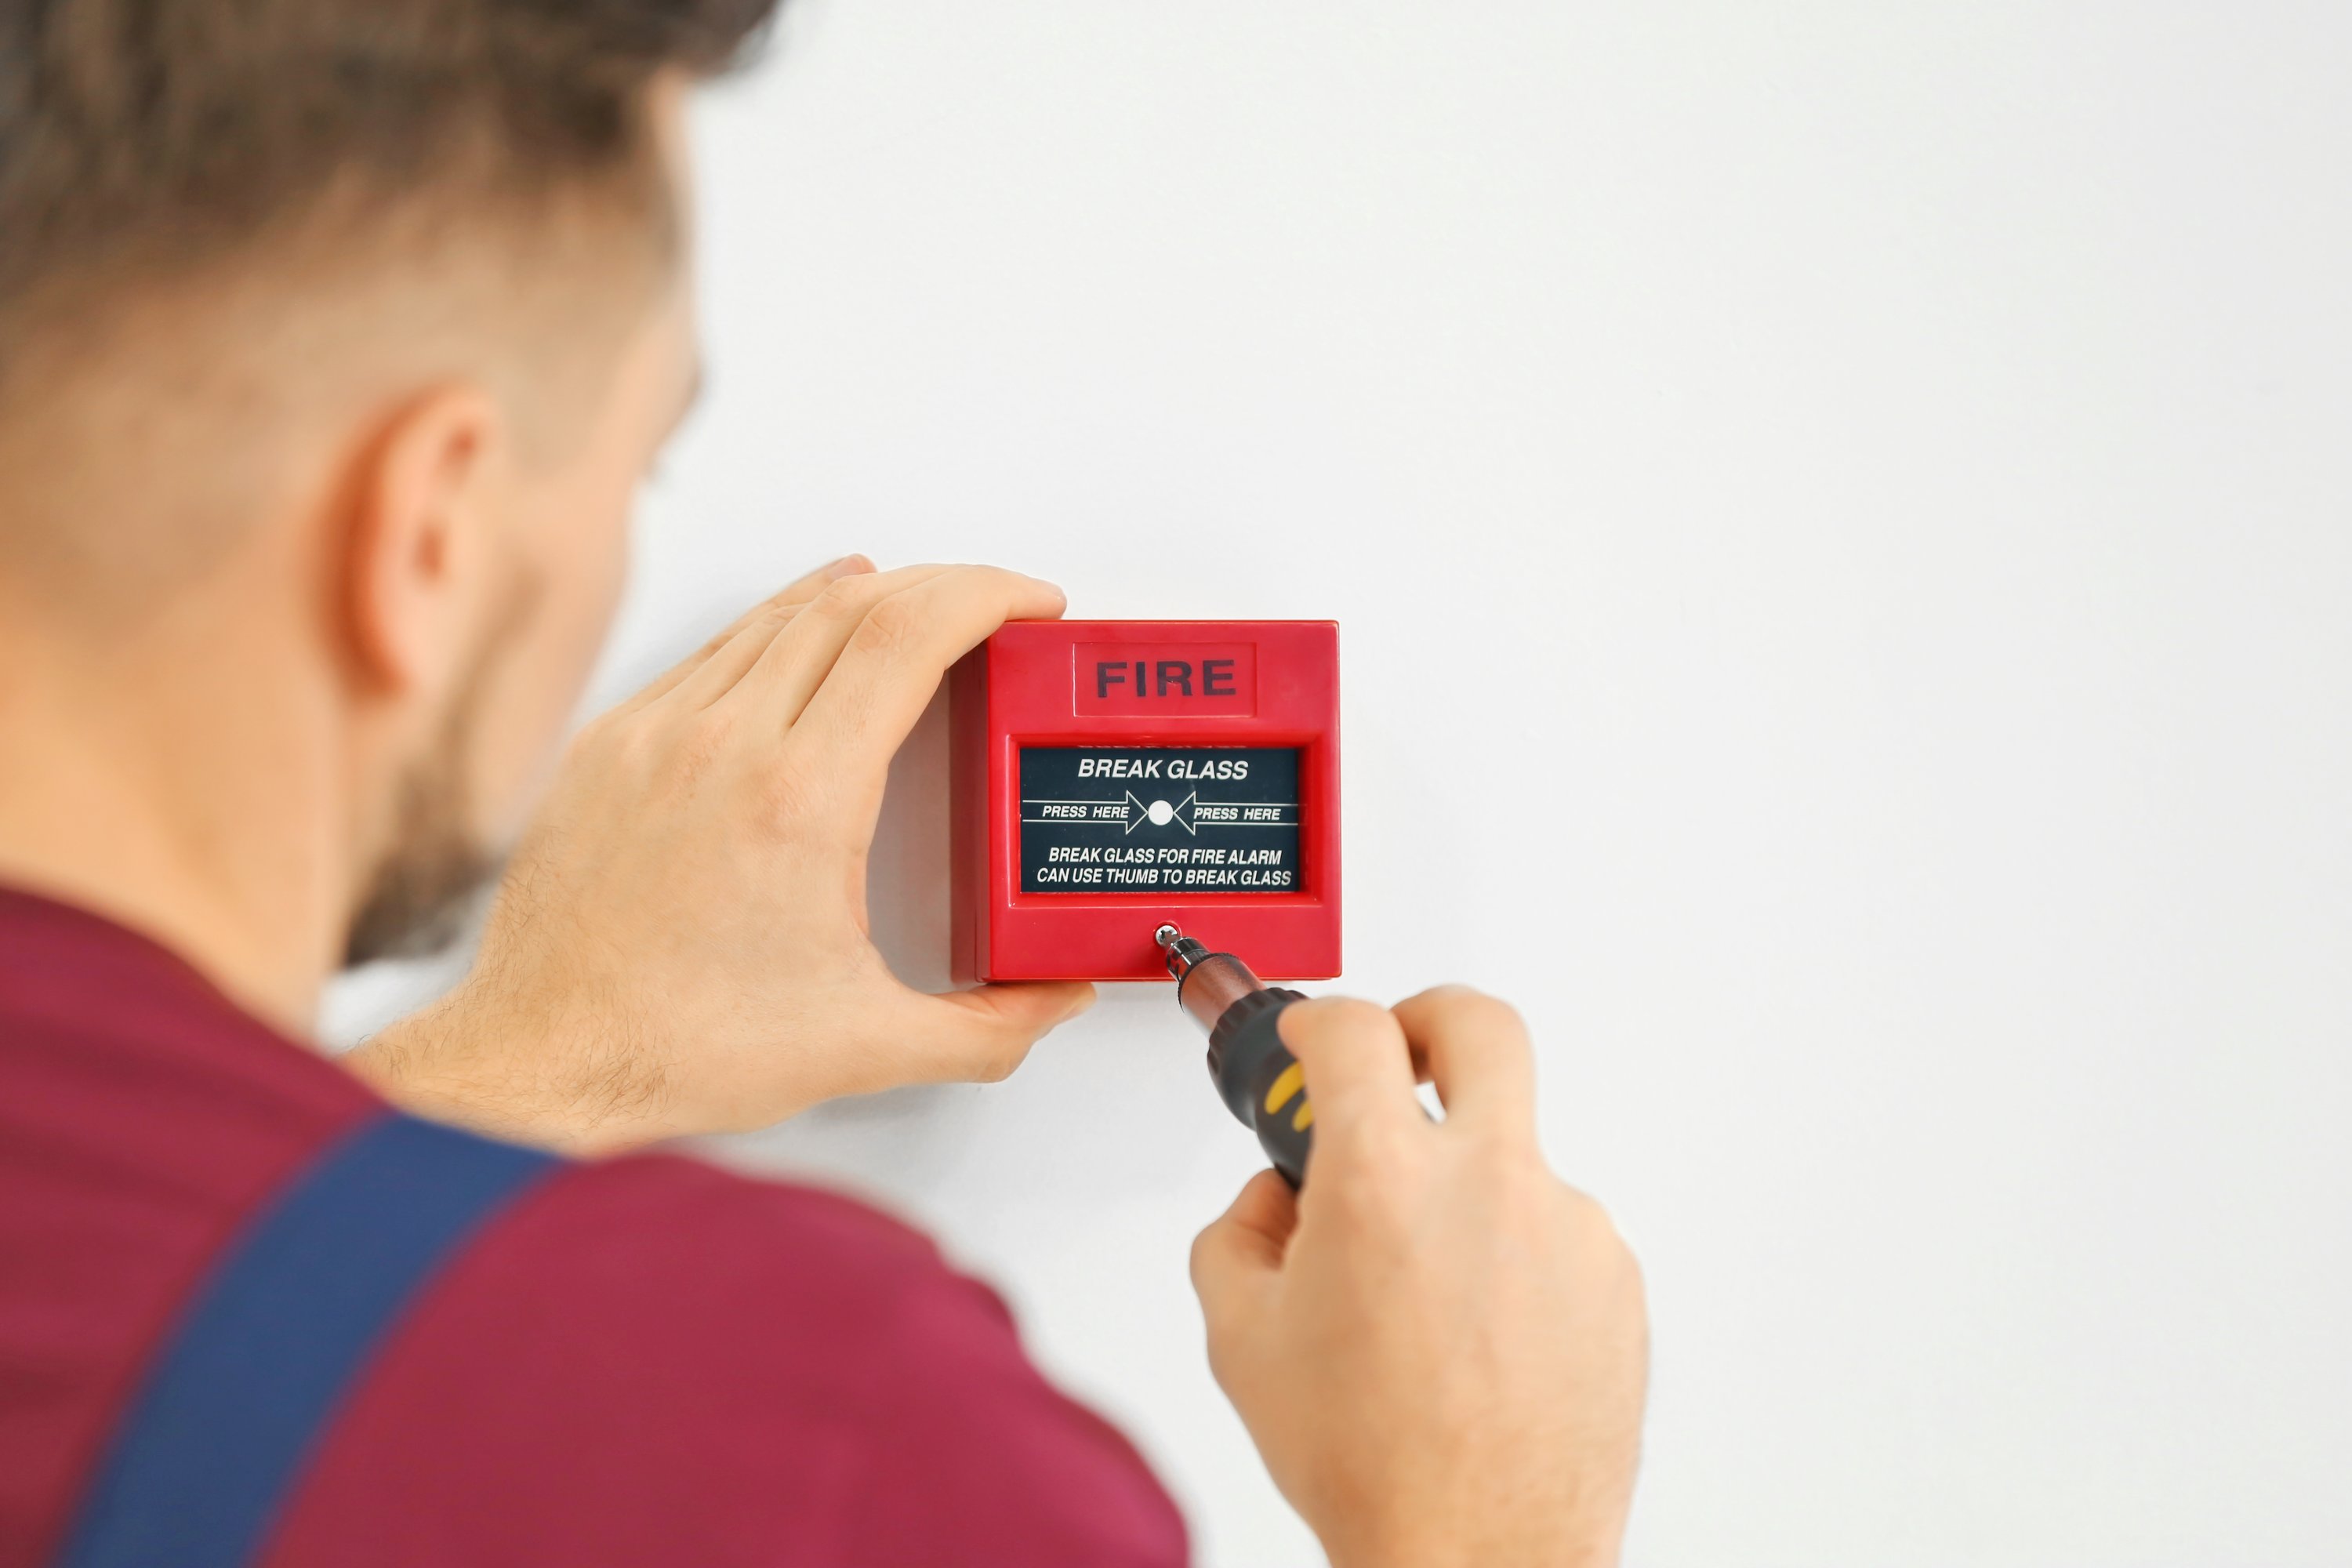 Alarm install. Installation of a Fire Alarm System. Техническое обслуживание пожарной сигнализации. Техническое обслуживание систем пожарной сигнализации. Монтаж и обслуживание охранно-пожарной сигнализации.